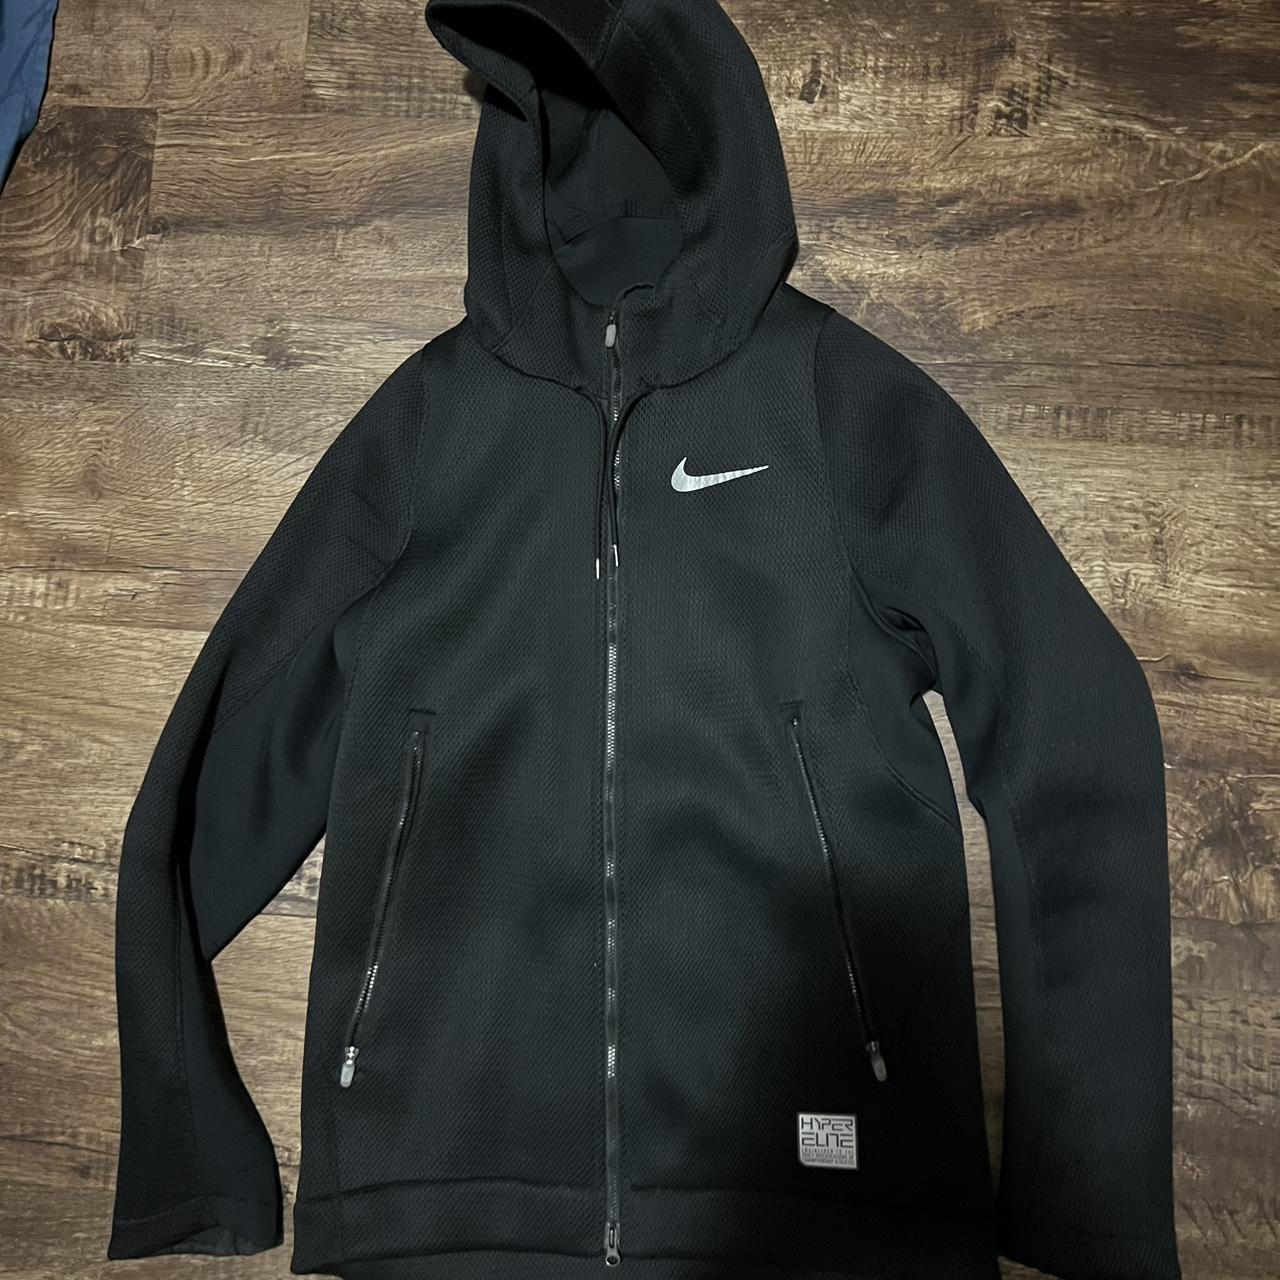 Hyper elite Nike zip up size small in great... - Depop